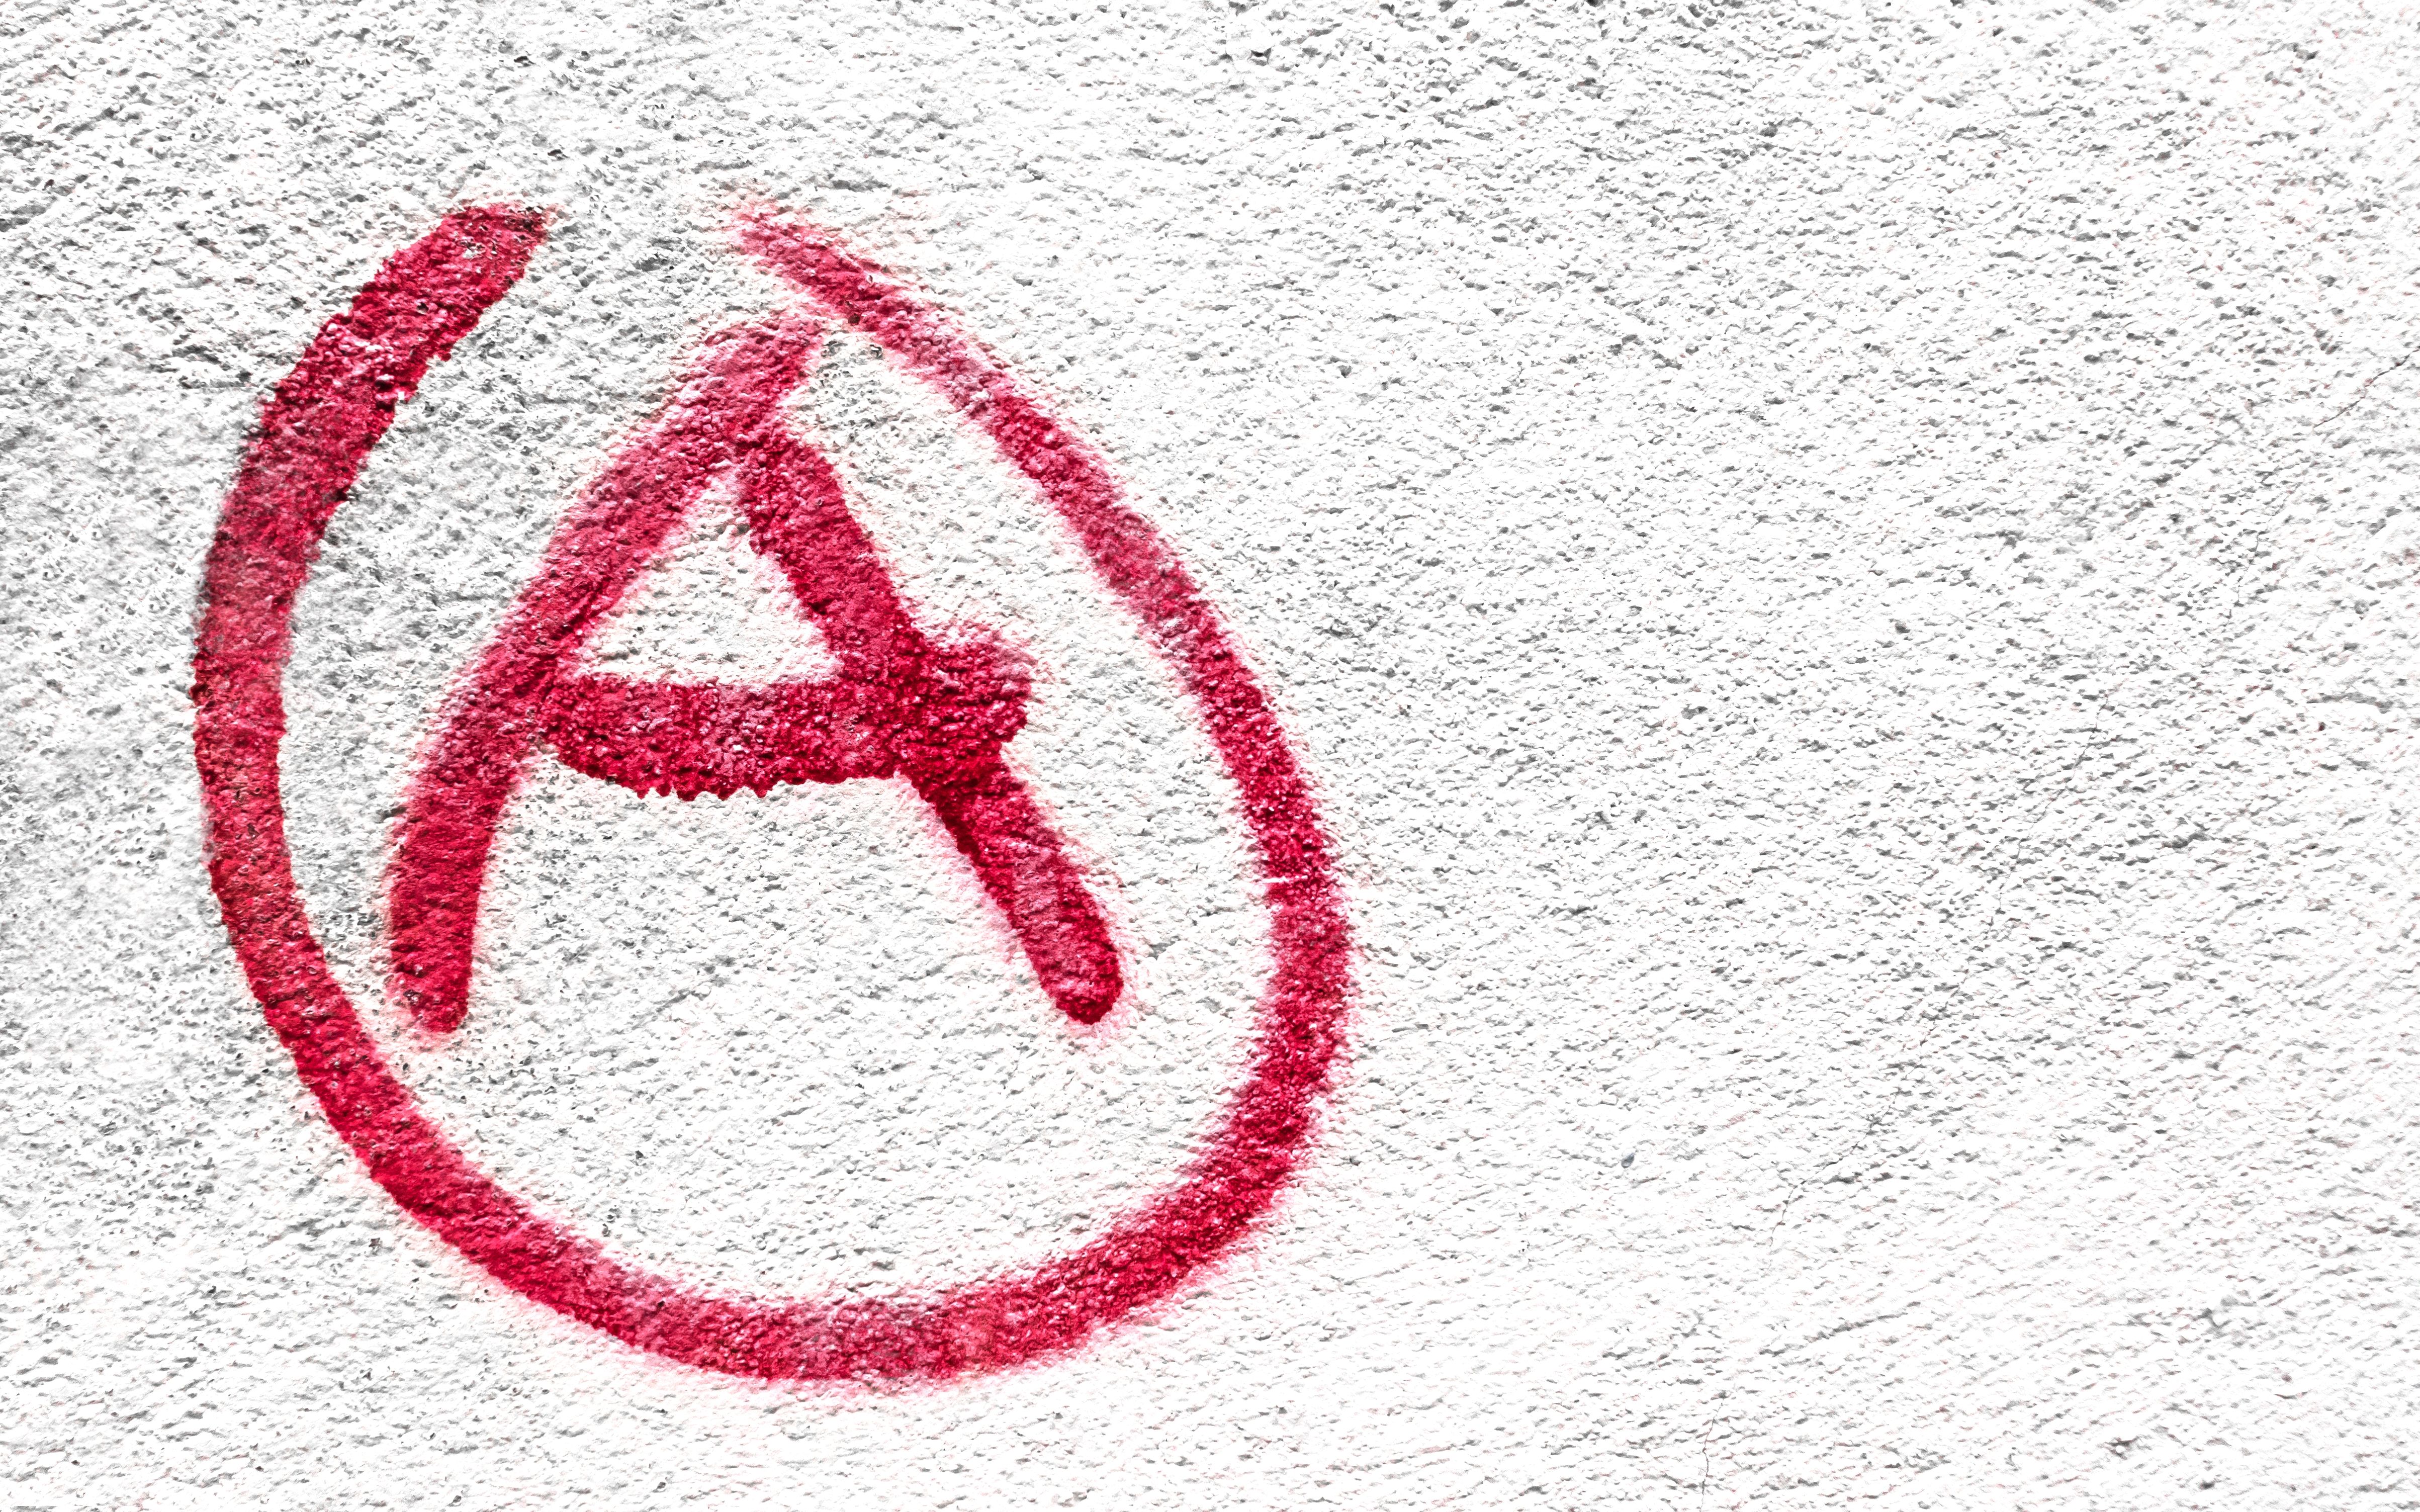 Symbol of Anarchy